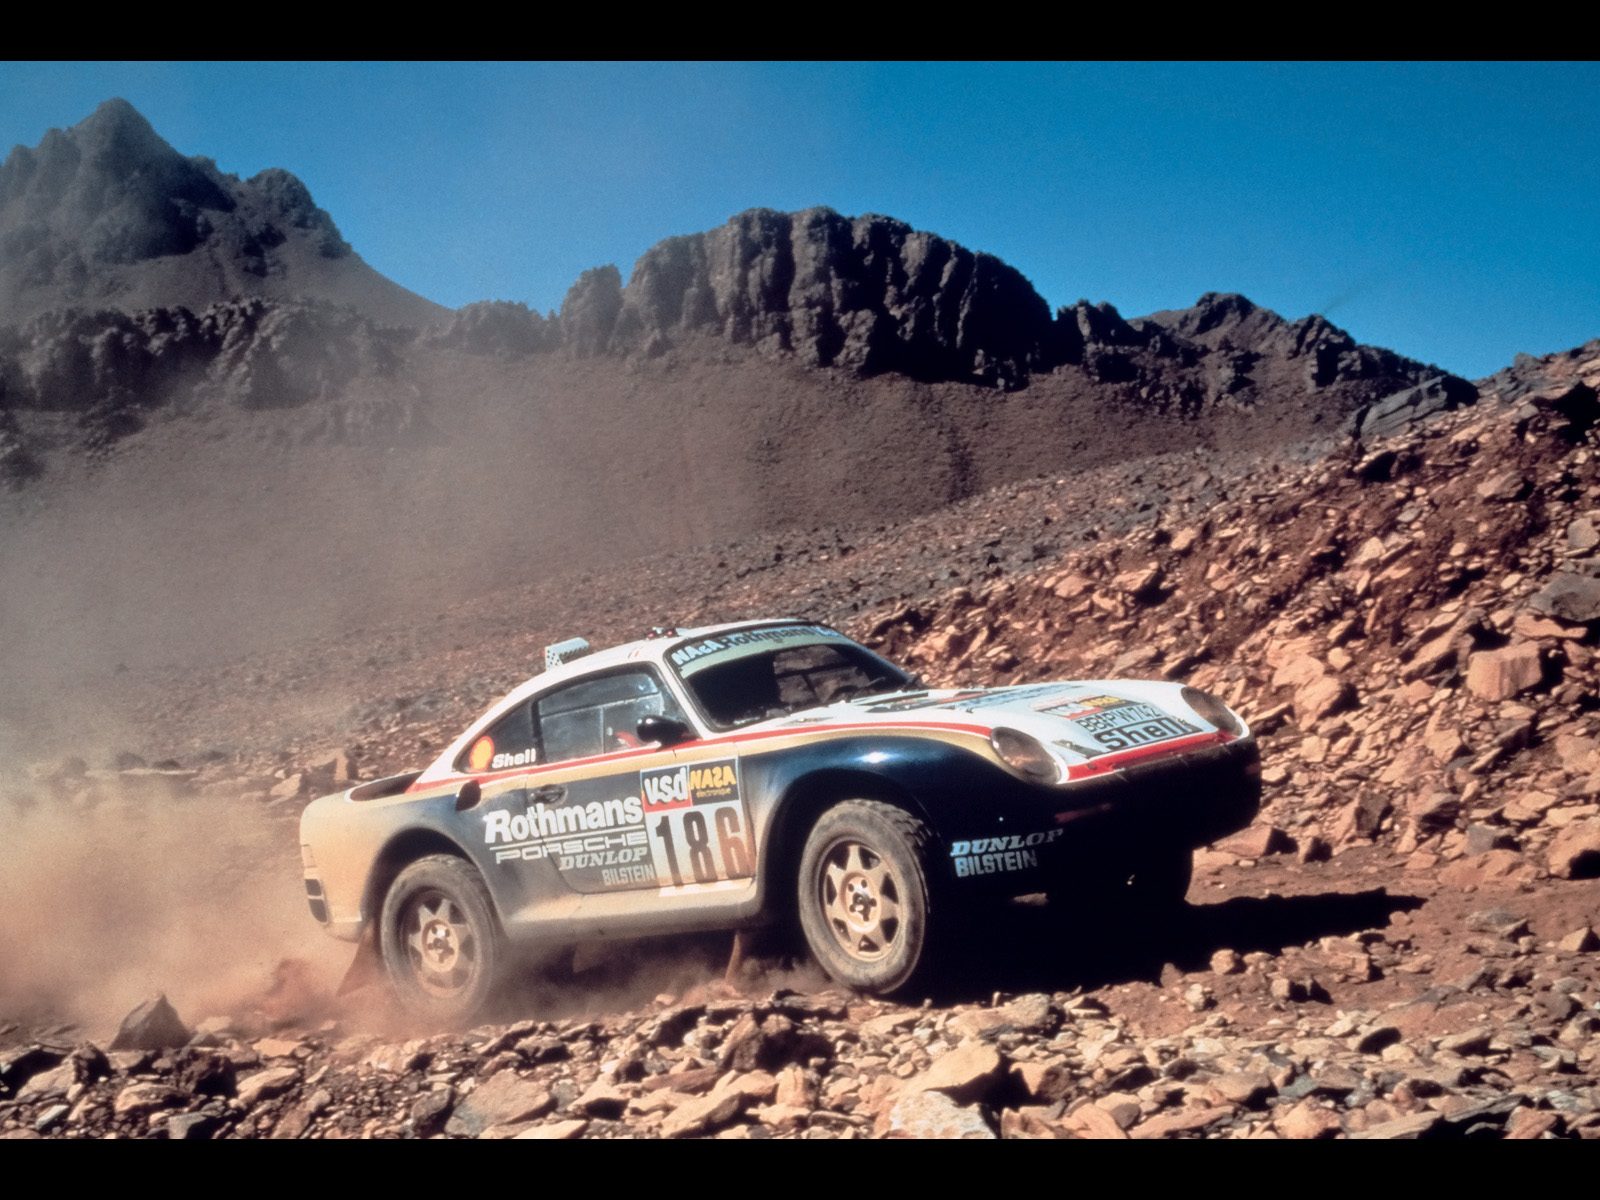 Porsche-959-Rally-1986-Paris-Dakar-Rally-1600x1200.jpg